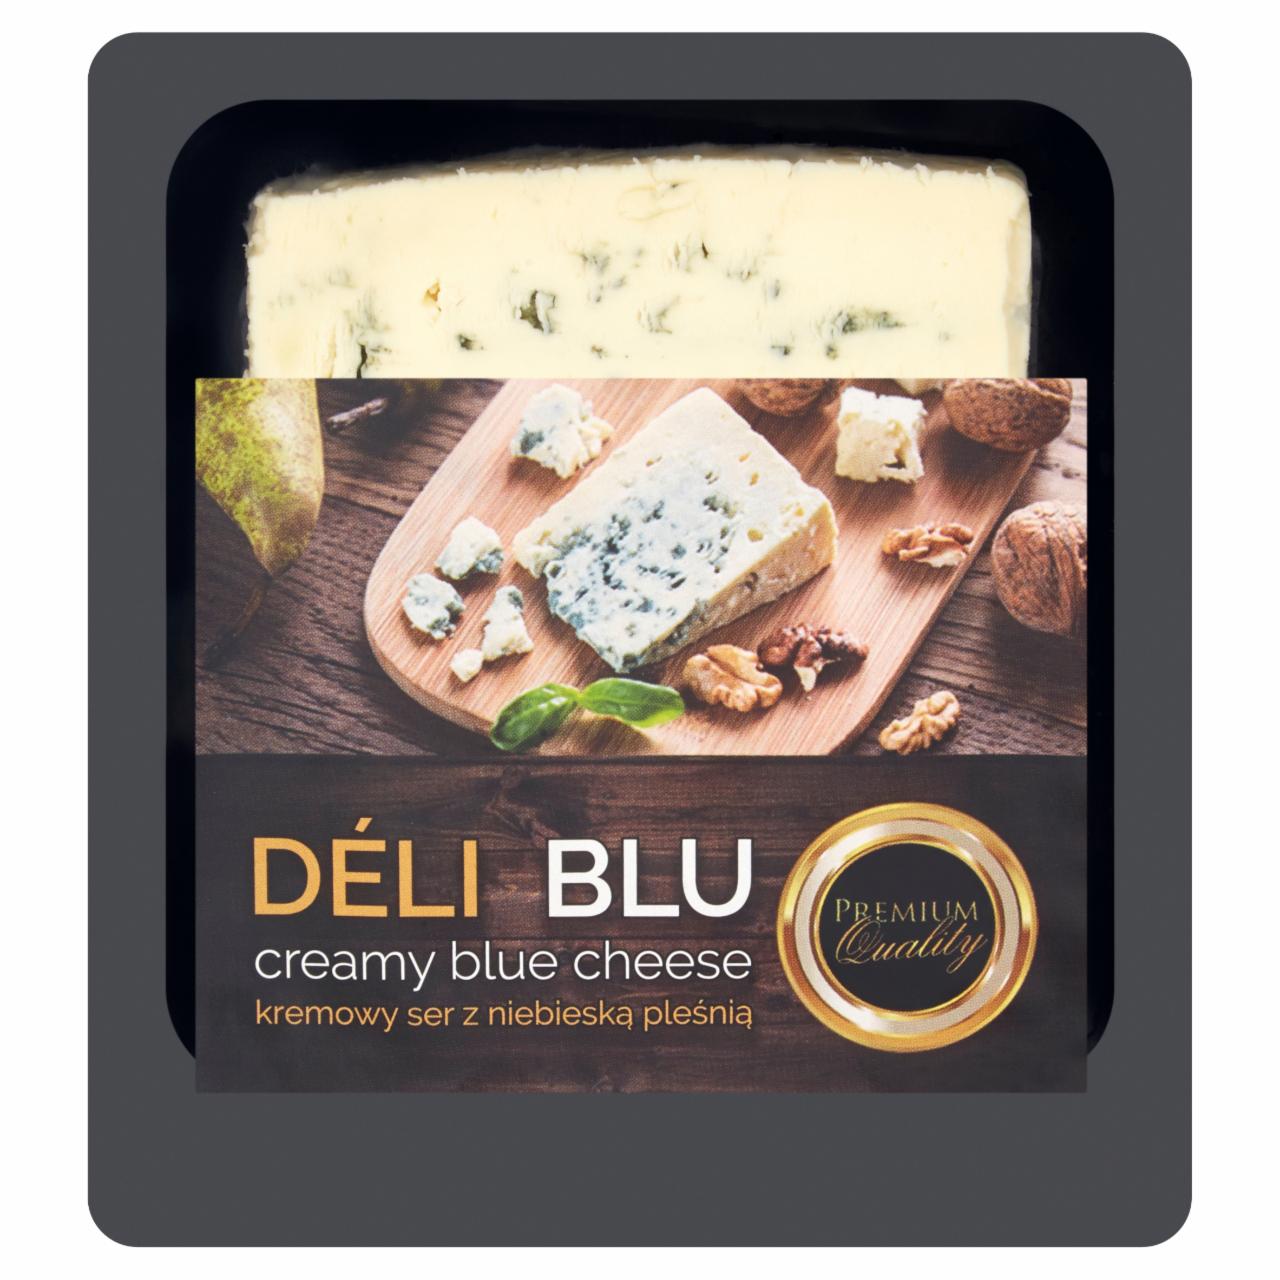 Zdjęcia - Déli Blu Kremowy ser z niebieską pleśnią 100 g